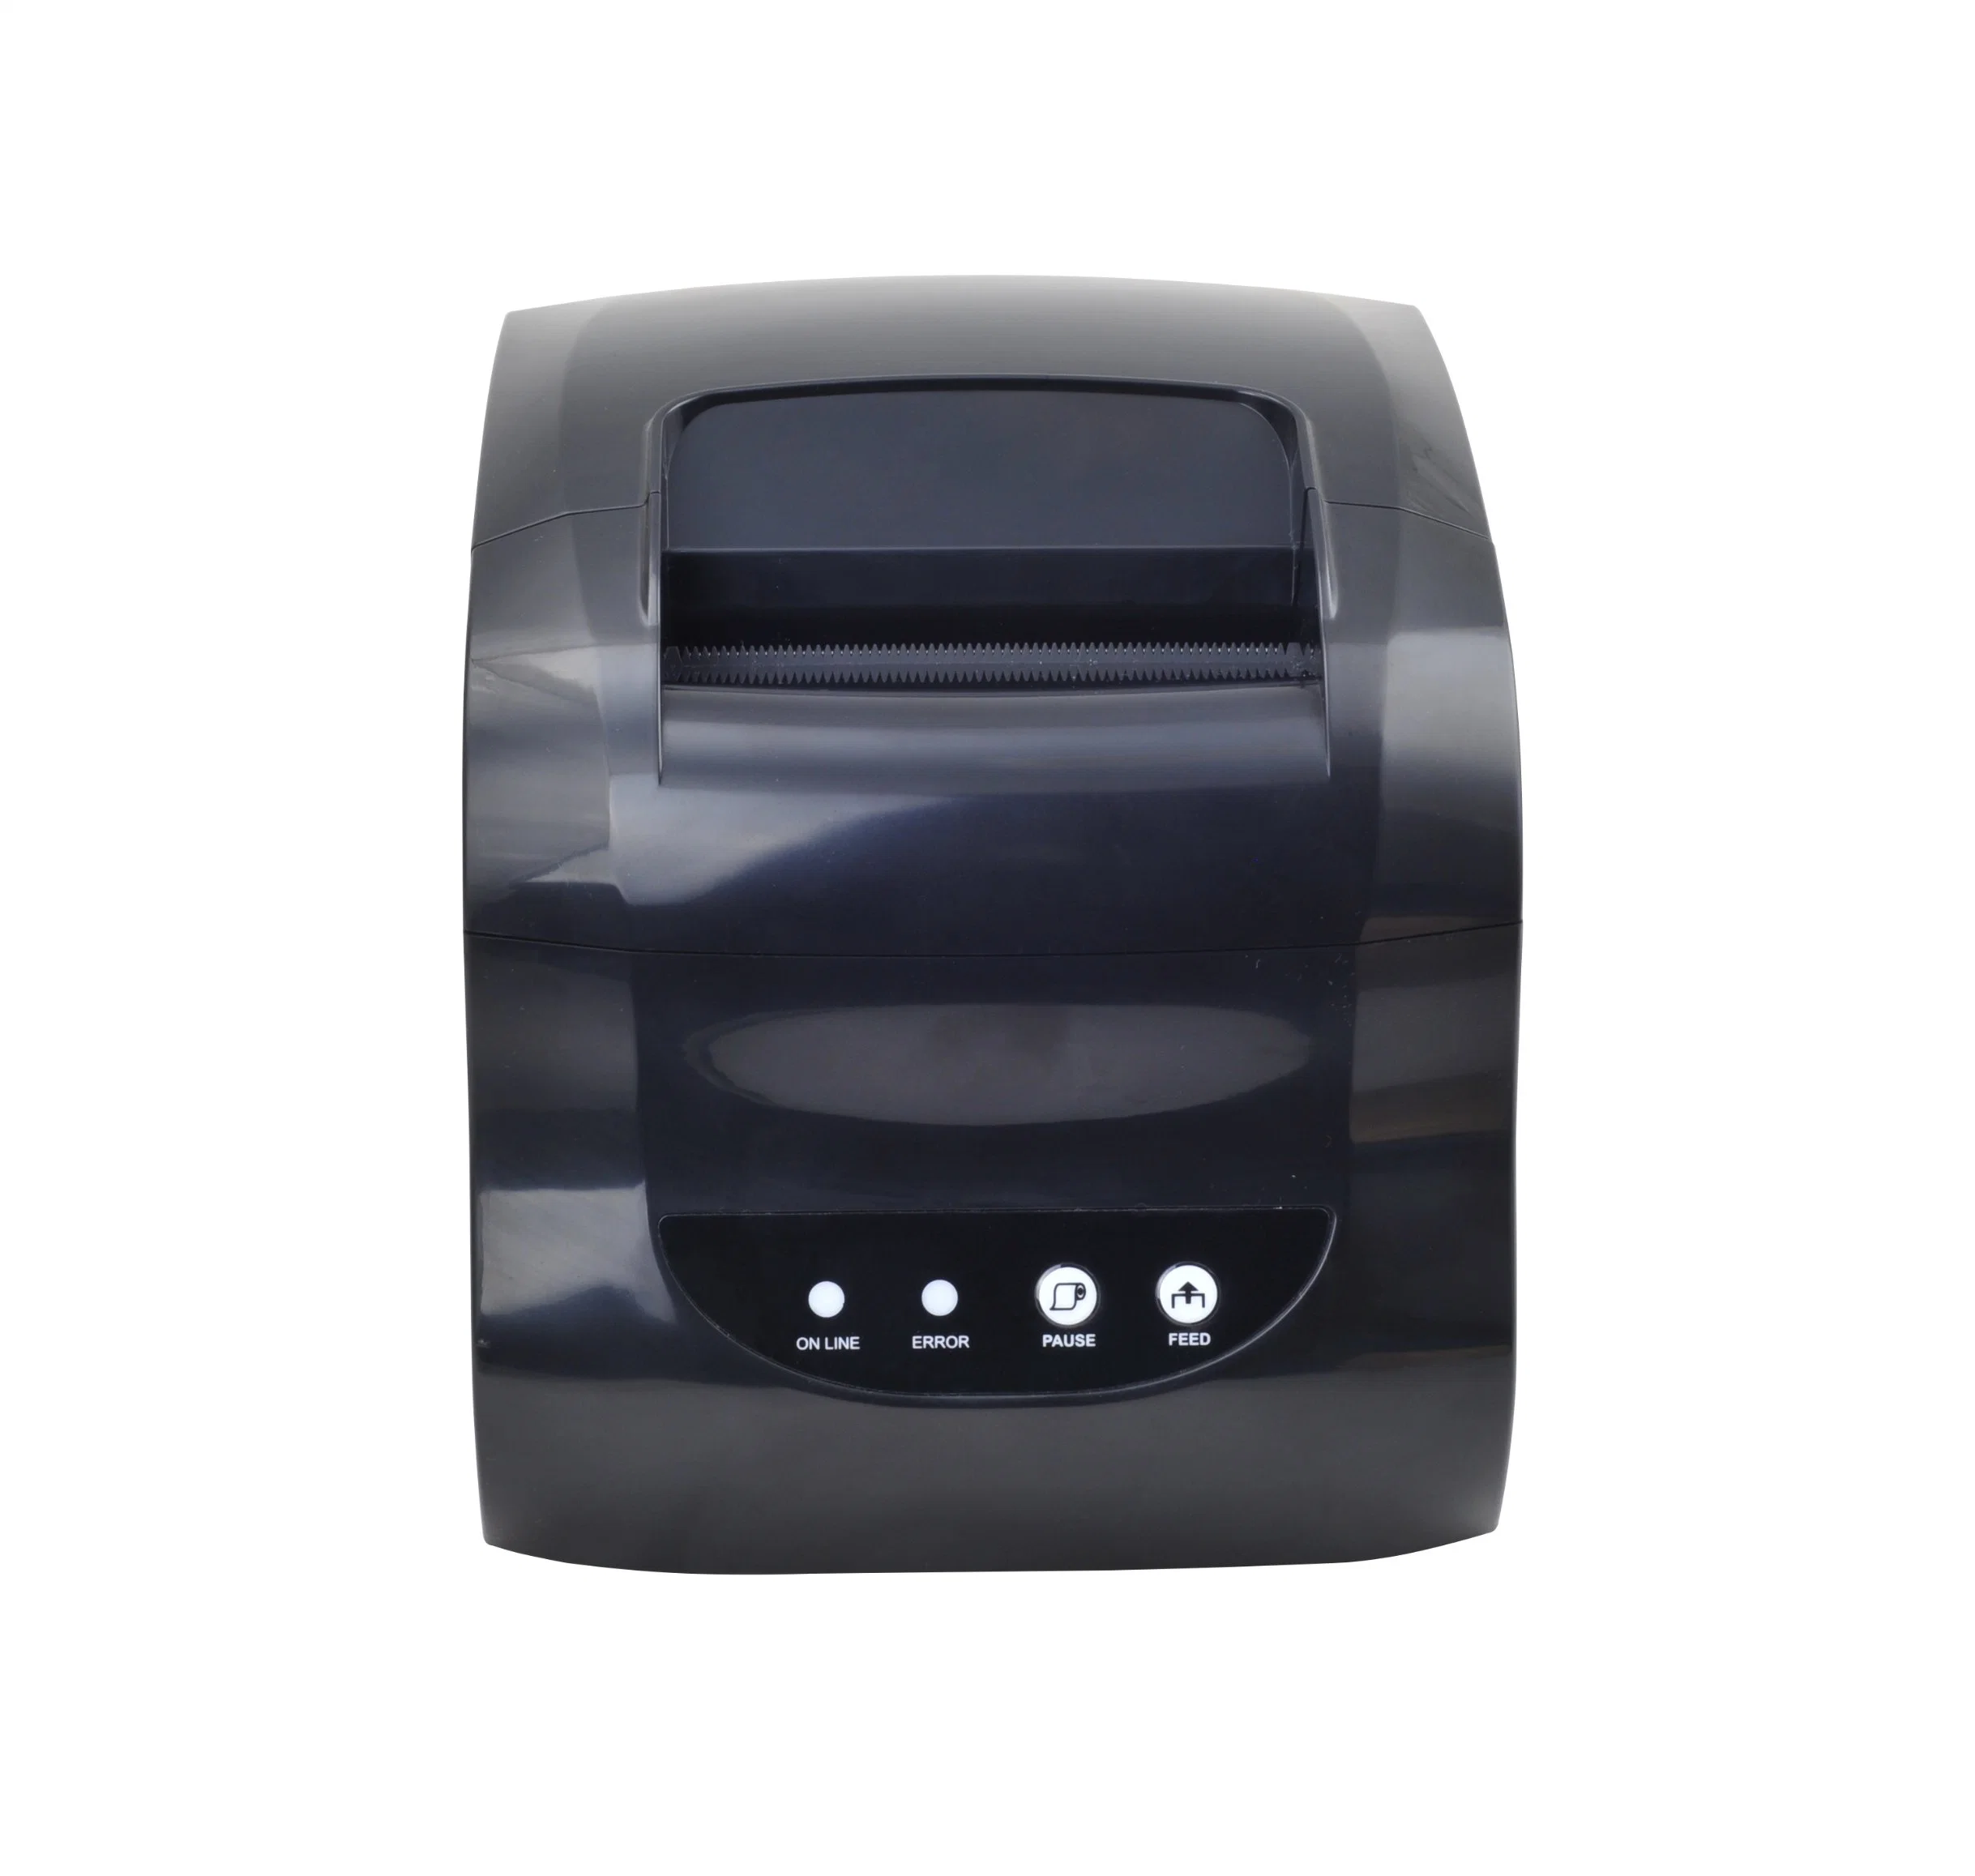 Imprimante thermique pour étiquettes/reçus prenant en charge les imprimantes thermiques ESC/POS/Tsc.